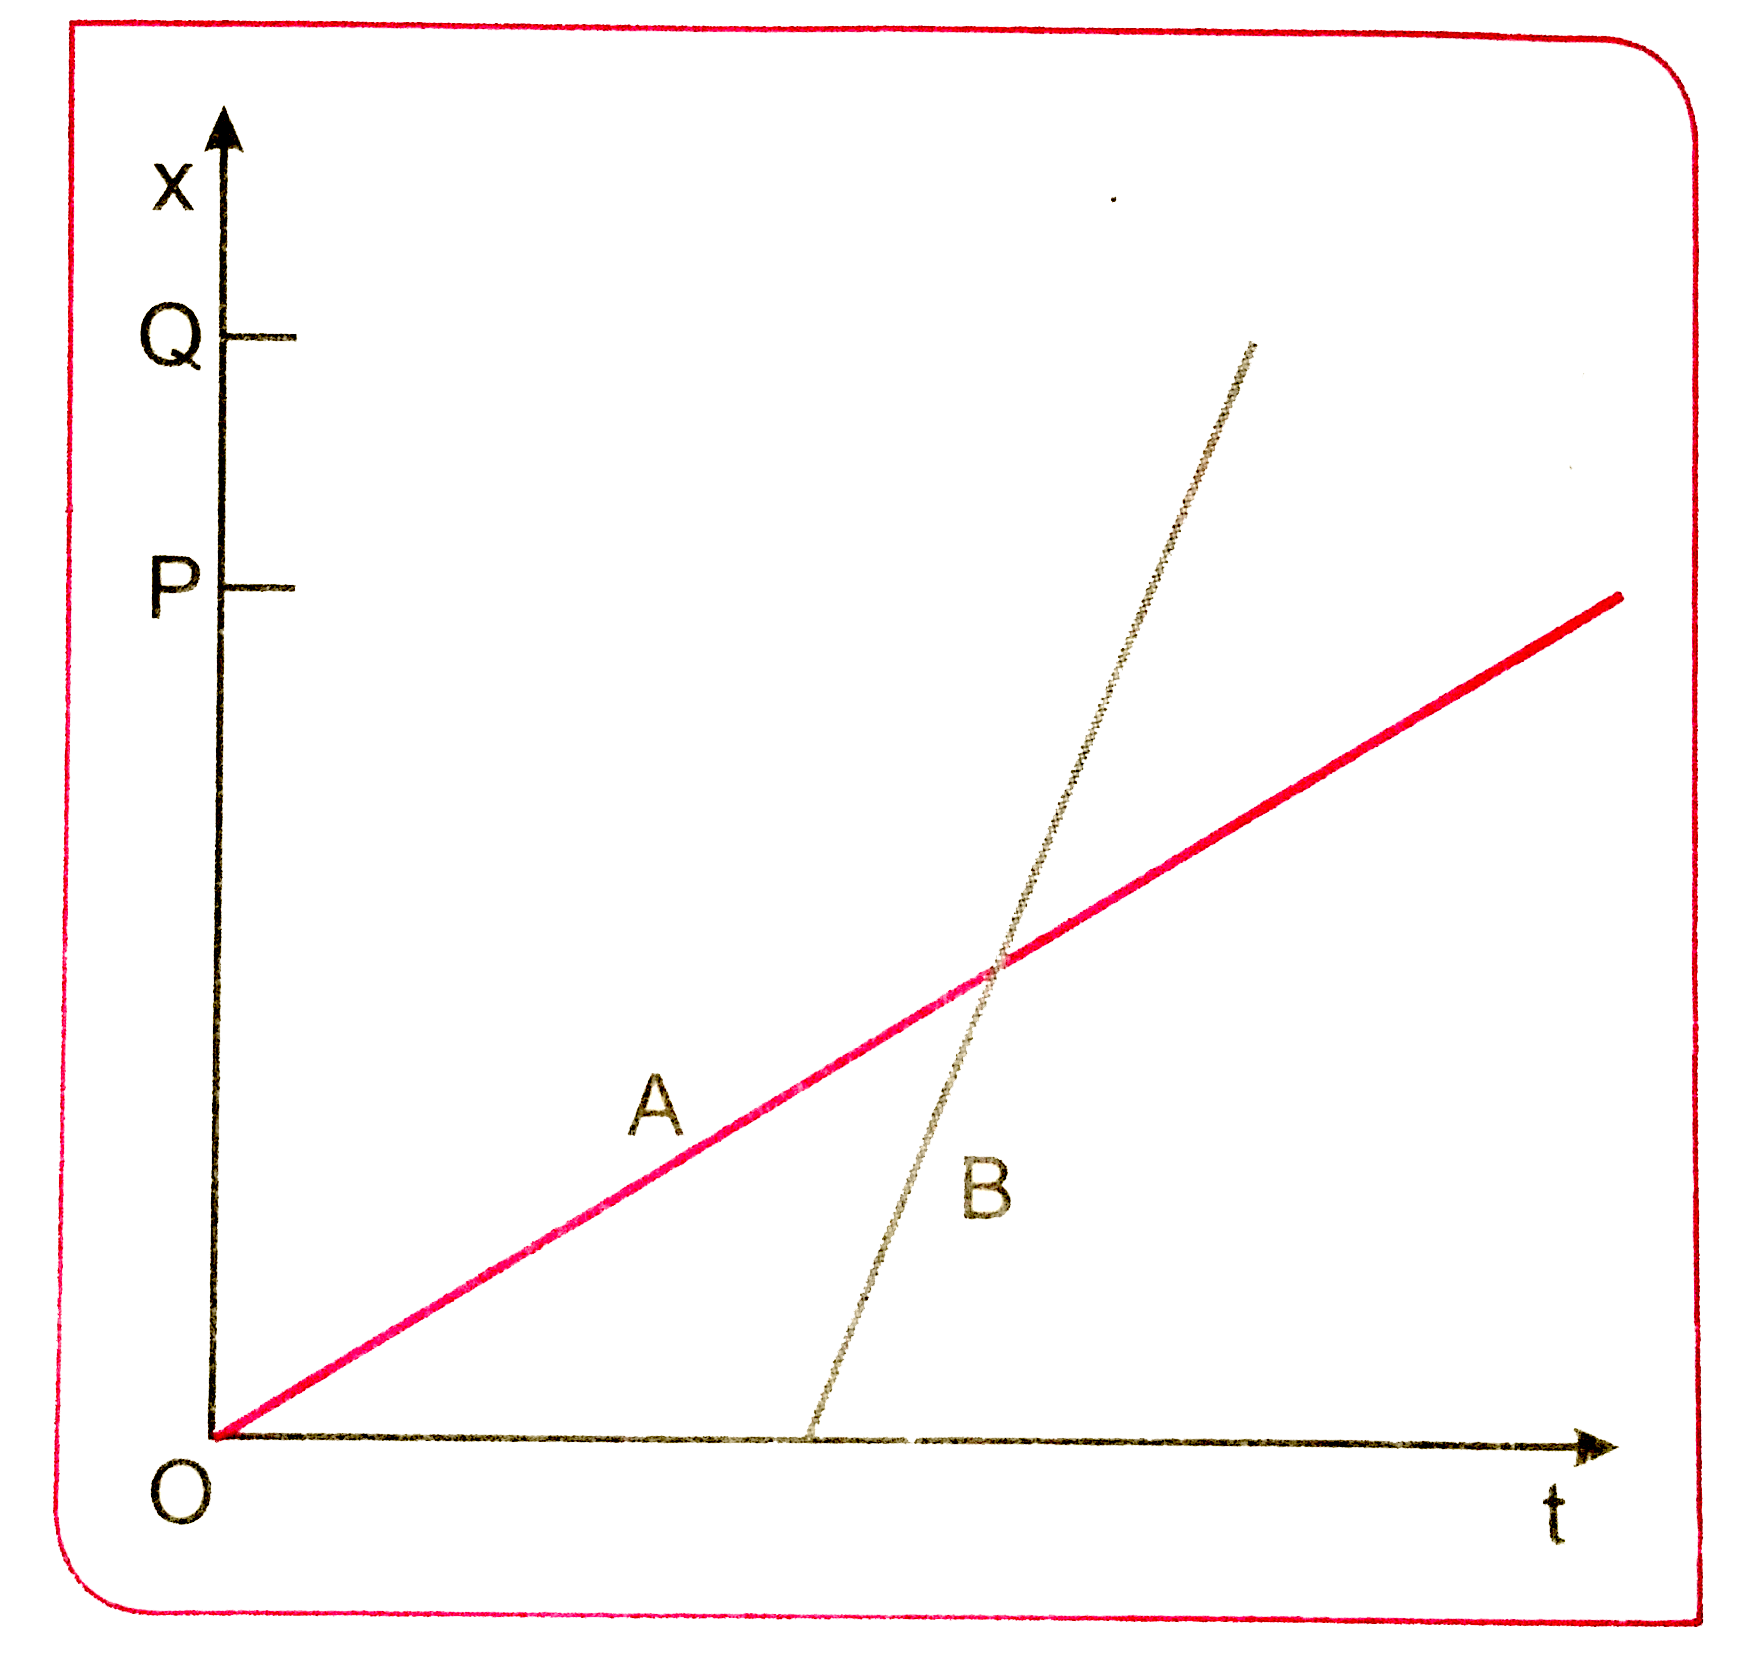 दो बच्चे A व B अपने विधालय O से लौटकर अपने - अपने घर क्रमशः P तथा Q को जा रहे है उनके स्थिति - समय (x-t) ग्राफ चित्र 3.45 में दिखाए गए है । नीचे लिखे कोष्ठकों में सही प्रविष्टियों को चुनिए :   A/B सड़क पर B/A से (एक बार/दो बार) आगे हो जाते है ।